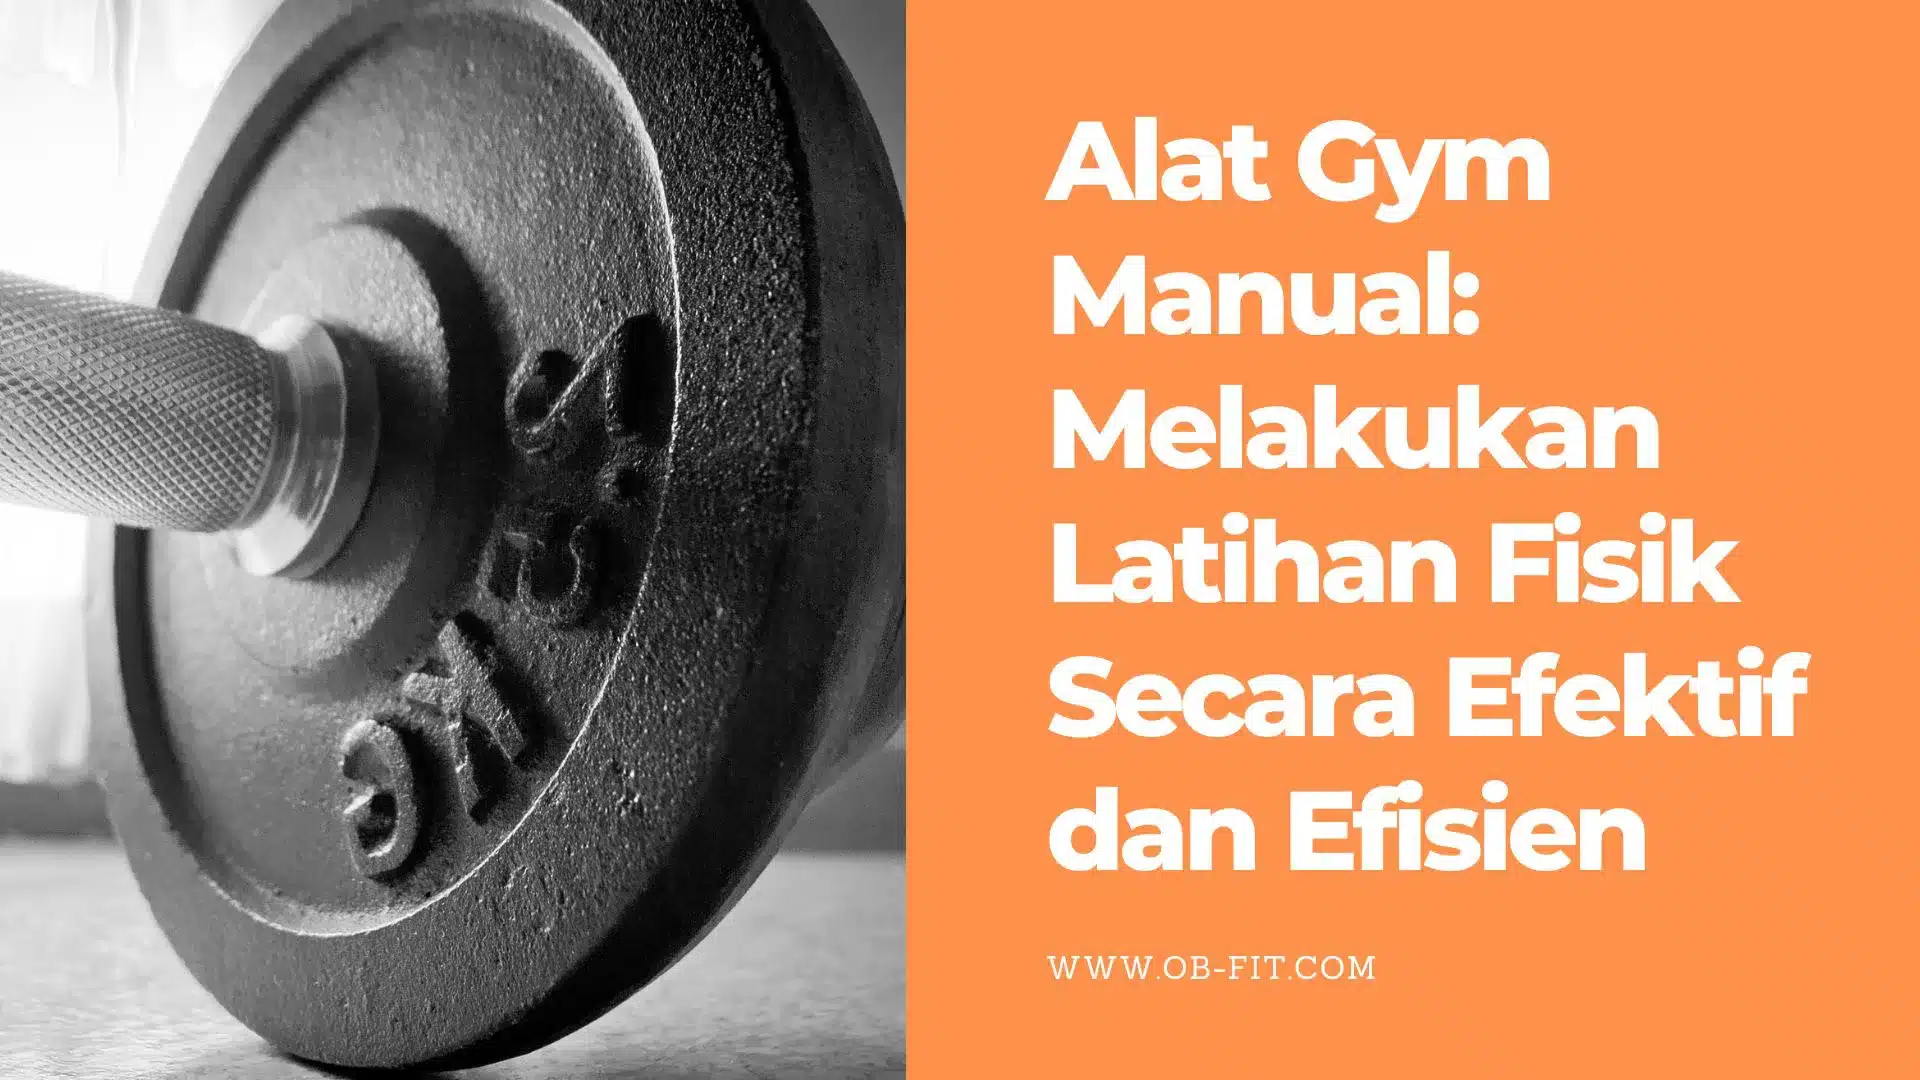 Alat Gym Manual Melakukan Latihan Fisik Secara Efektif dan Efisien